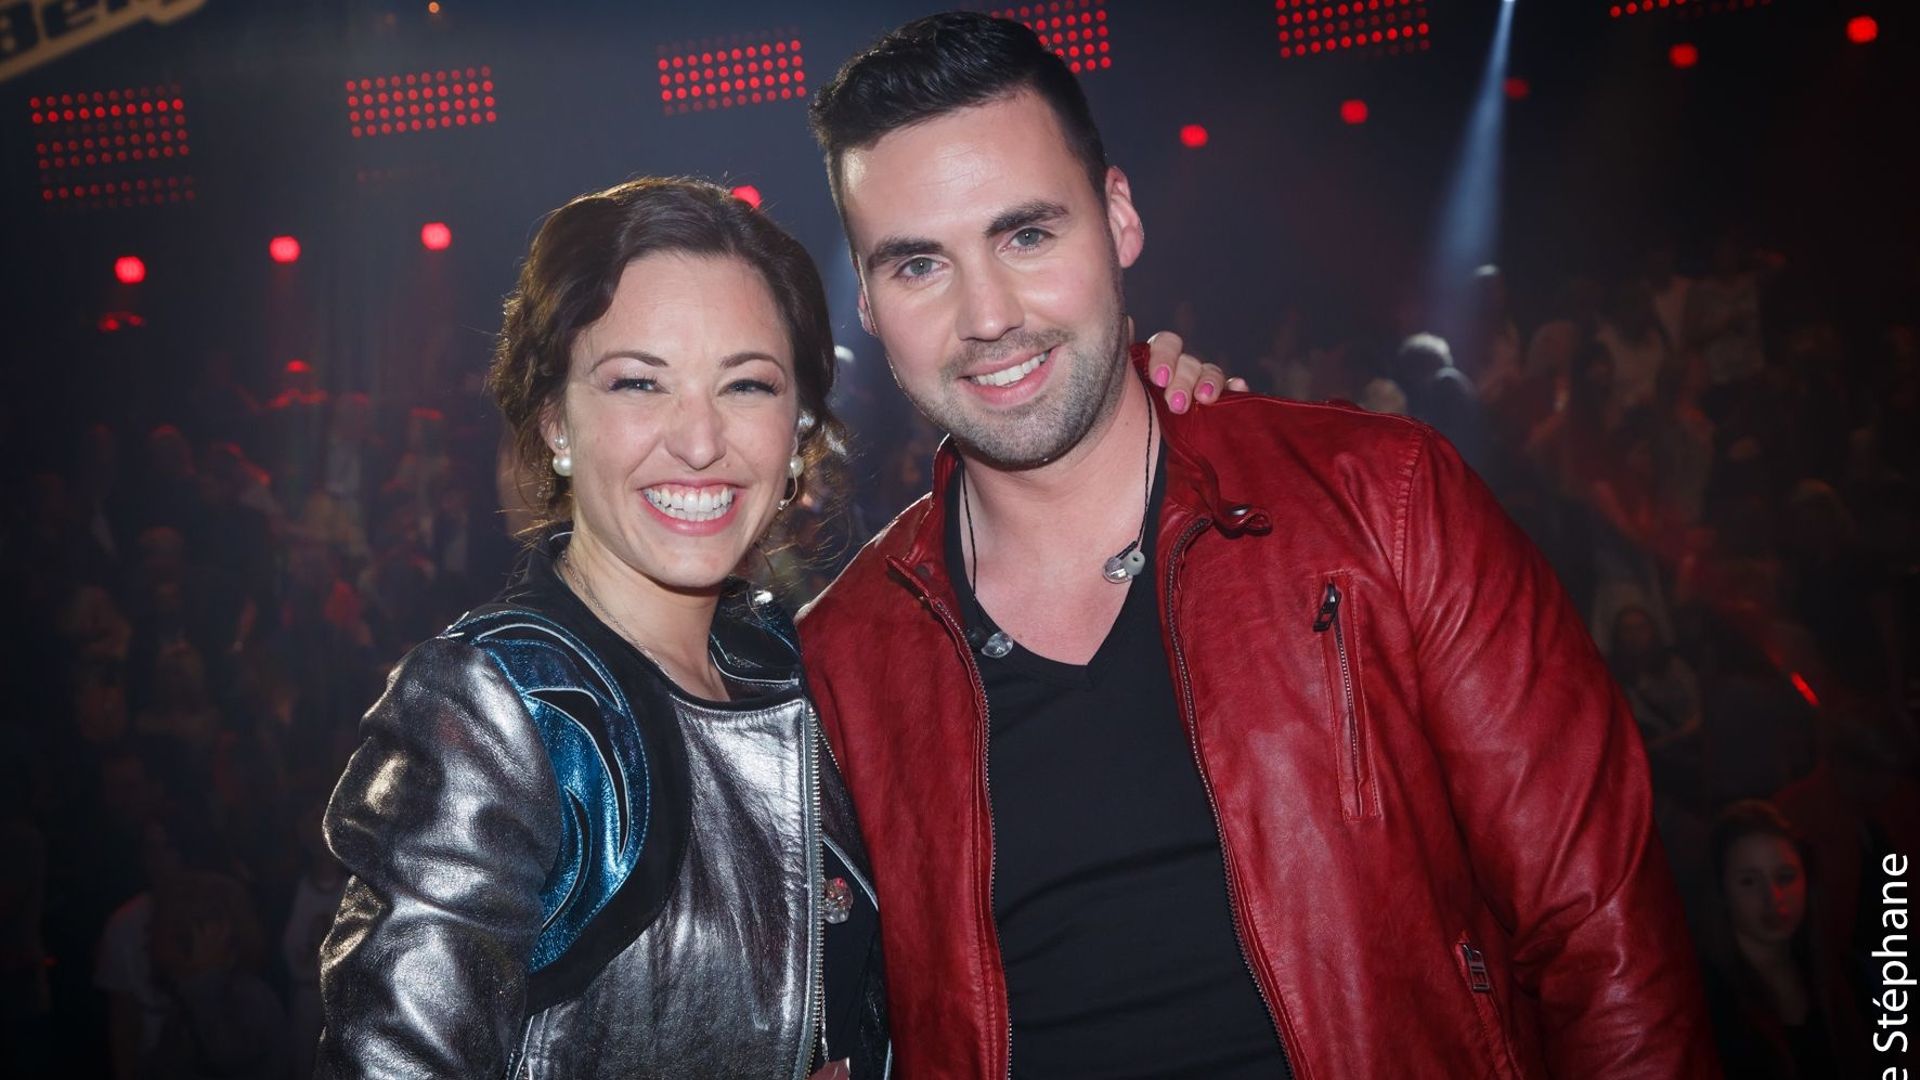 Natasha St-Pier de retour un jour dans The Voice Belgique ? "Pourquoi pas !"